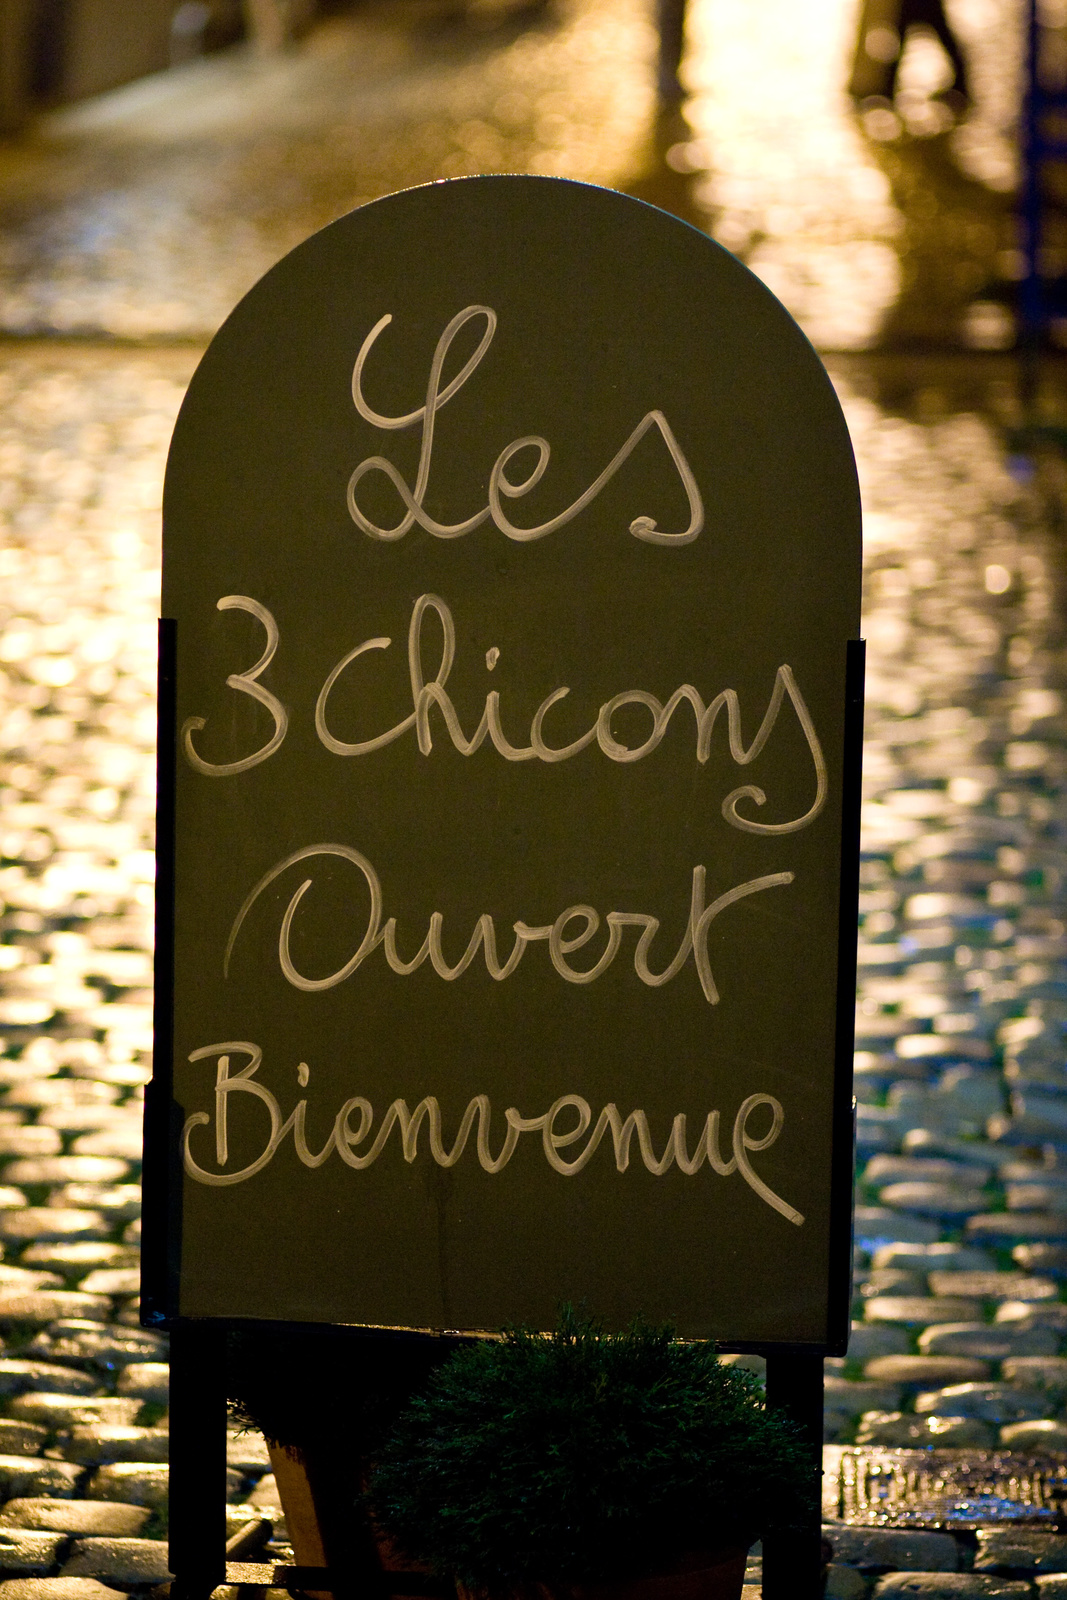 A 3 Chicons étterem táblája